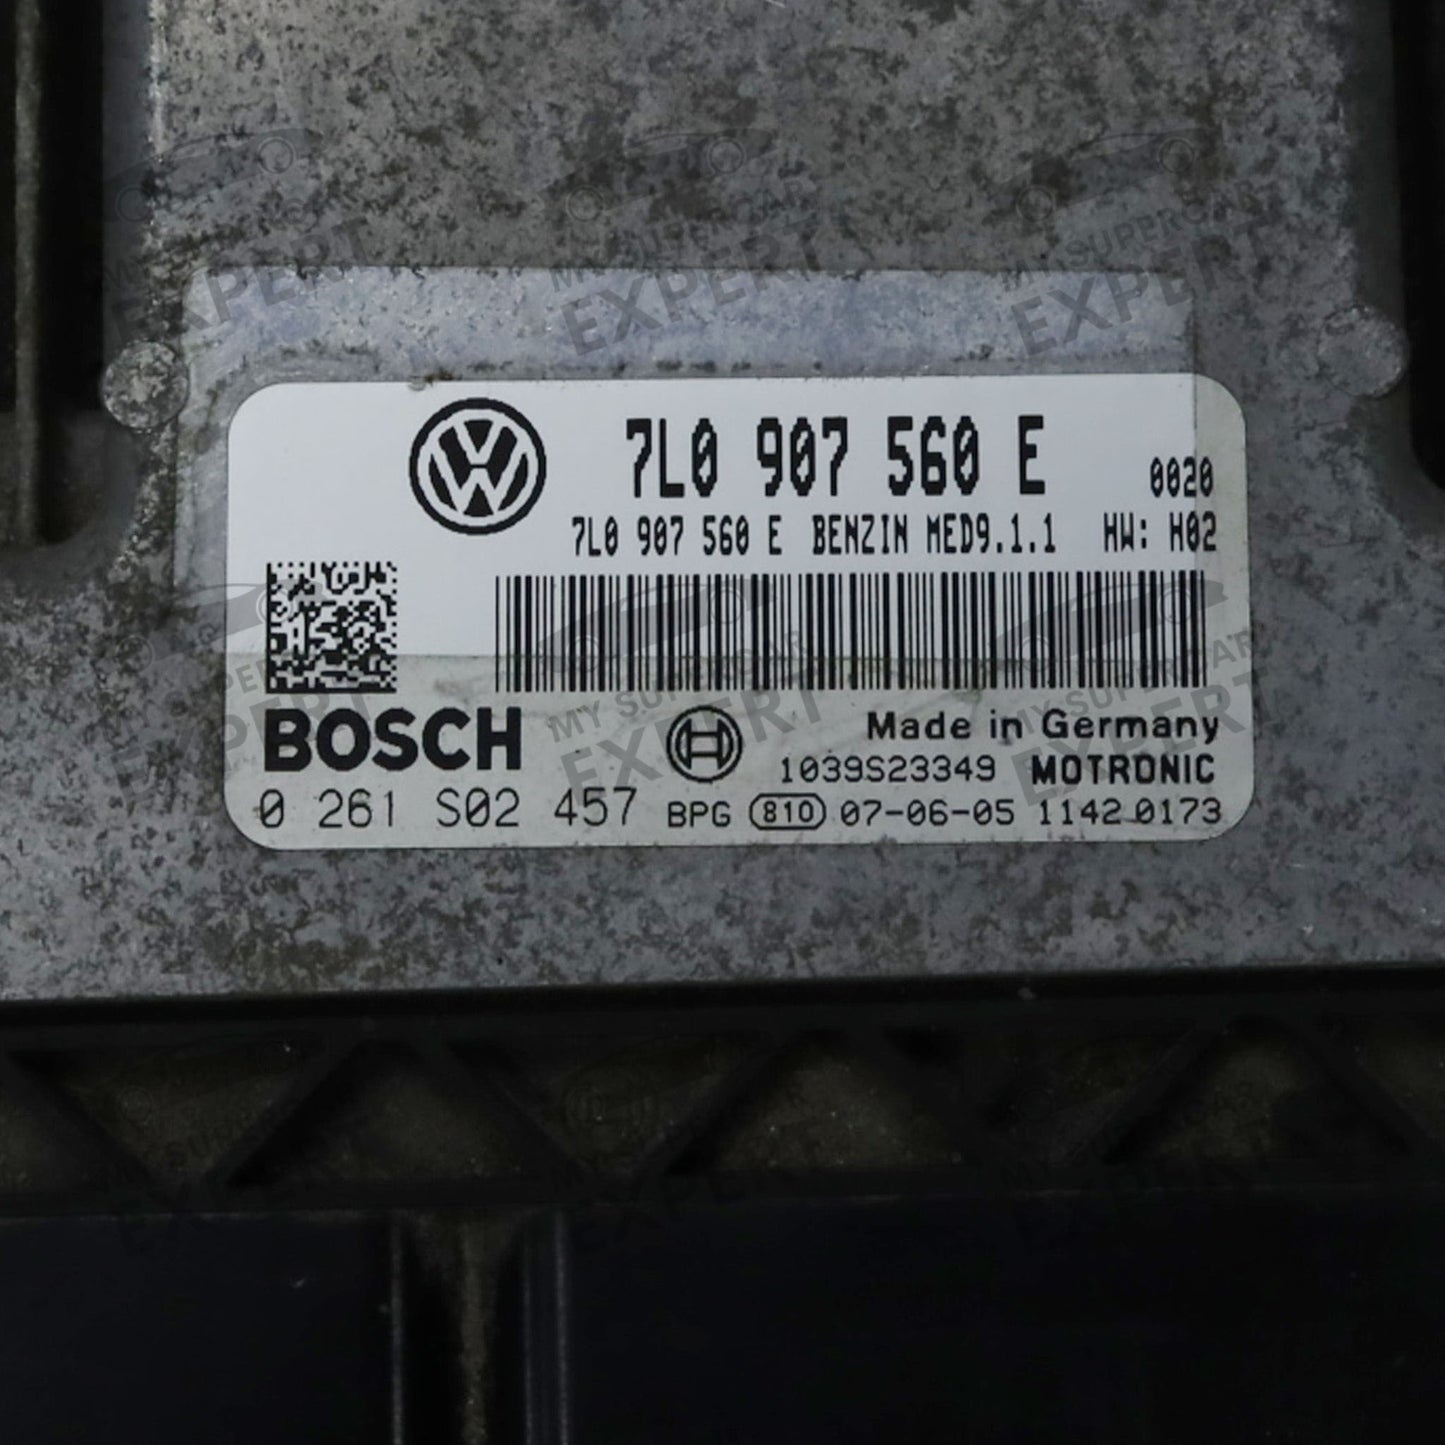 Блок управления двигателем VW Volkswagen Touareg ECU Bosch MED9.1.1 7L0907560E 0261S02457 Б-У